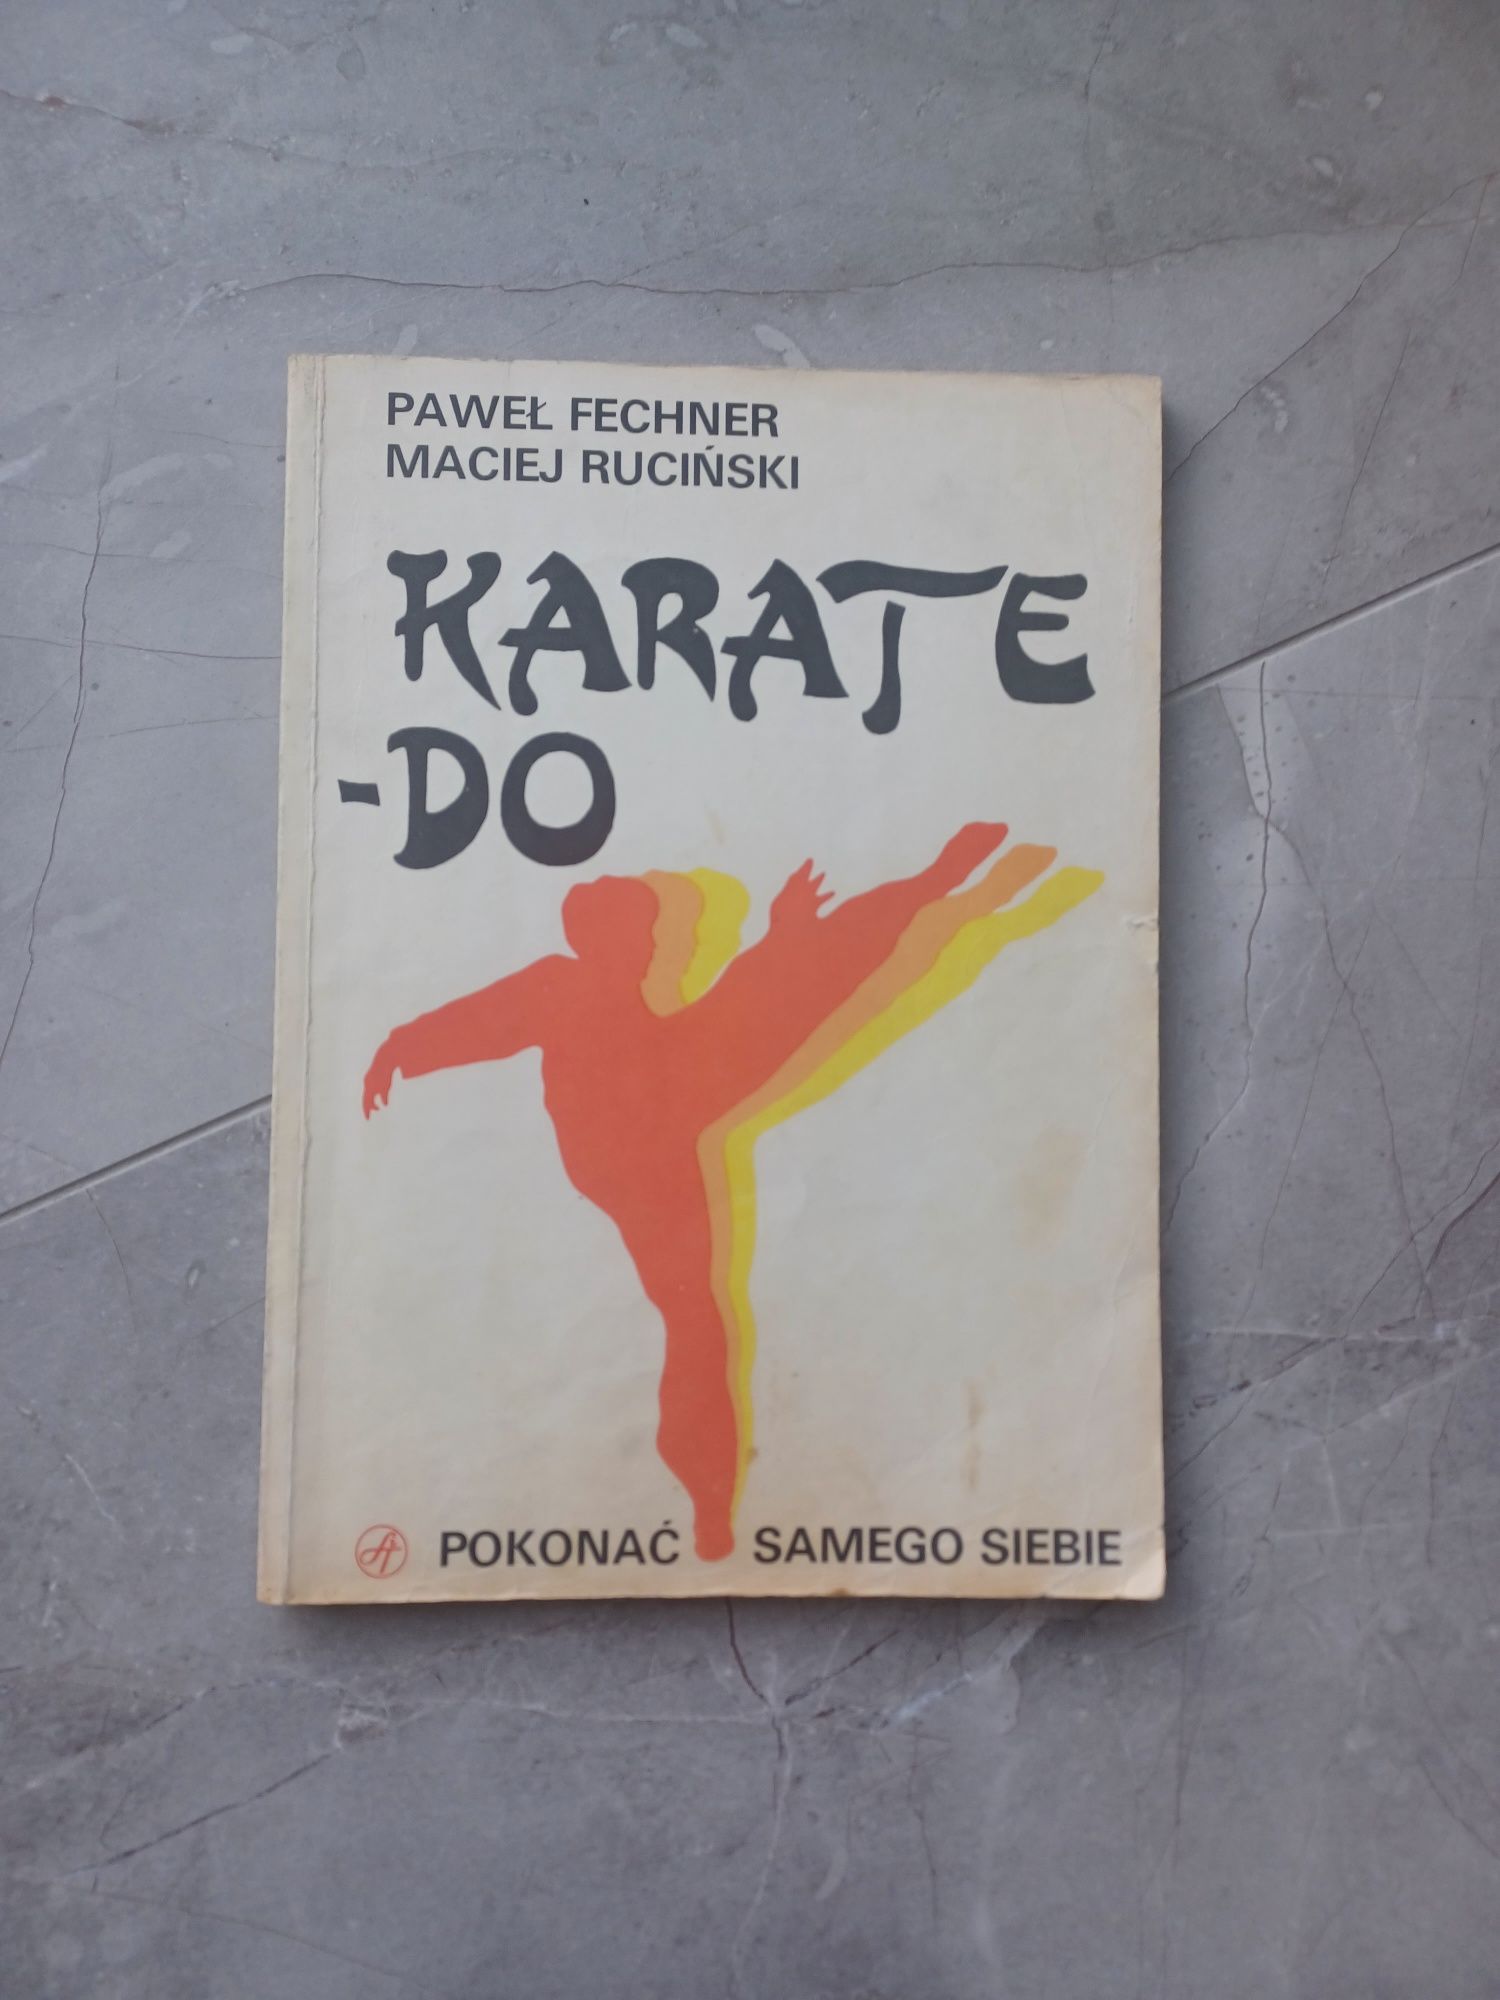 Karate-Do Paweł Fechner Maciej Ruciński podręcznik do karate PRL